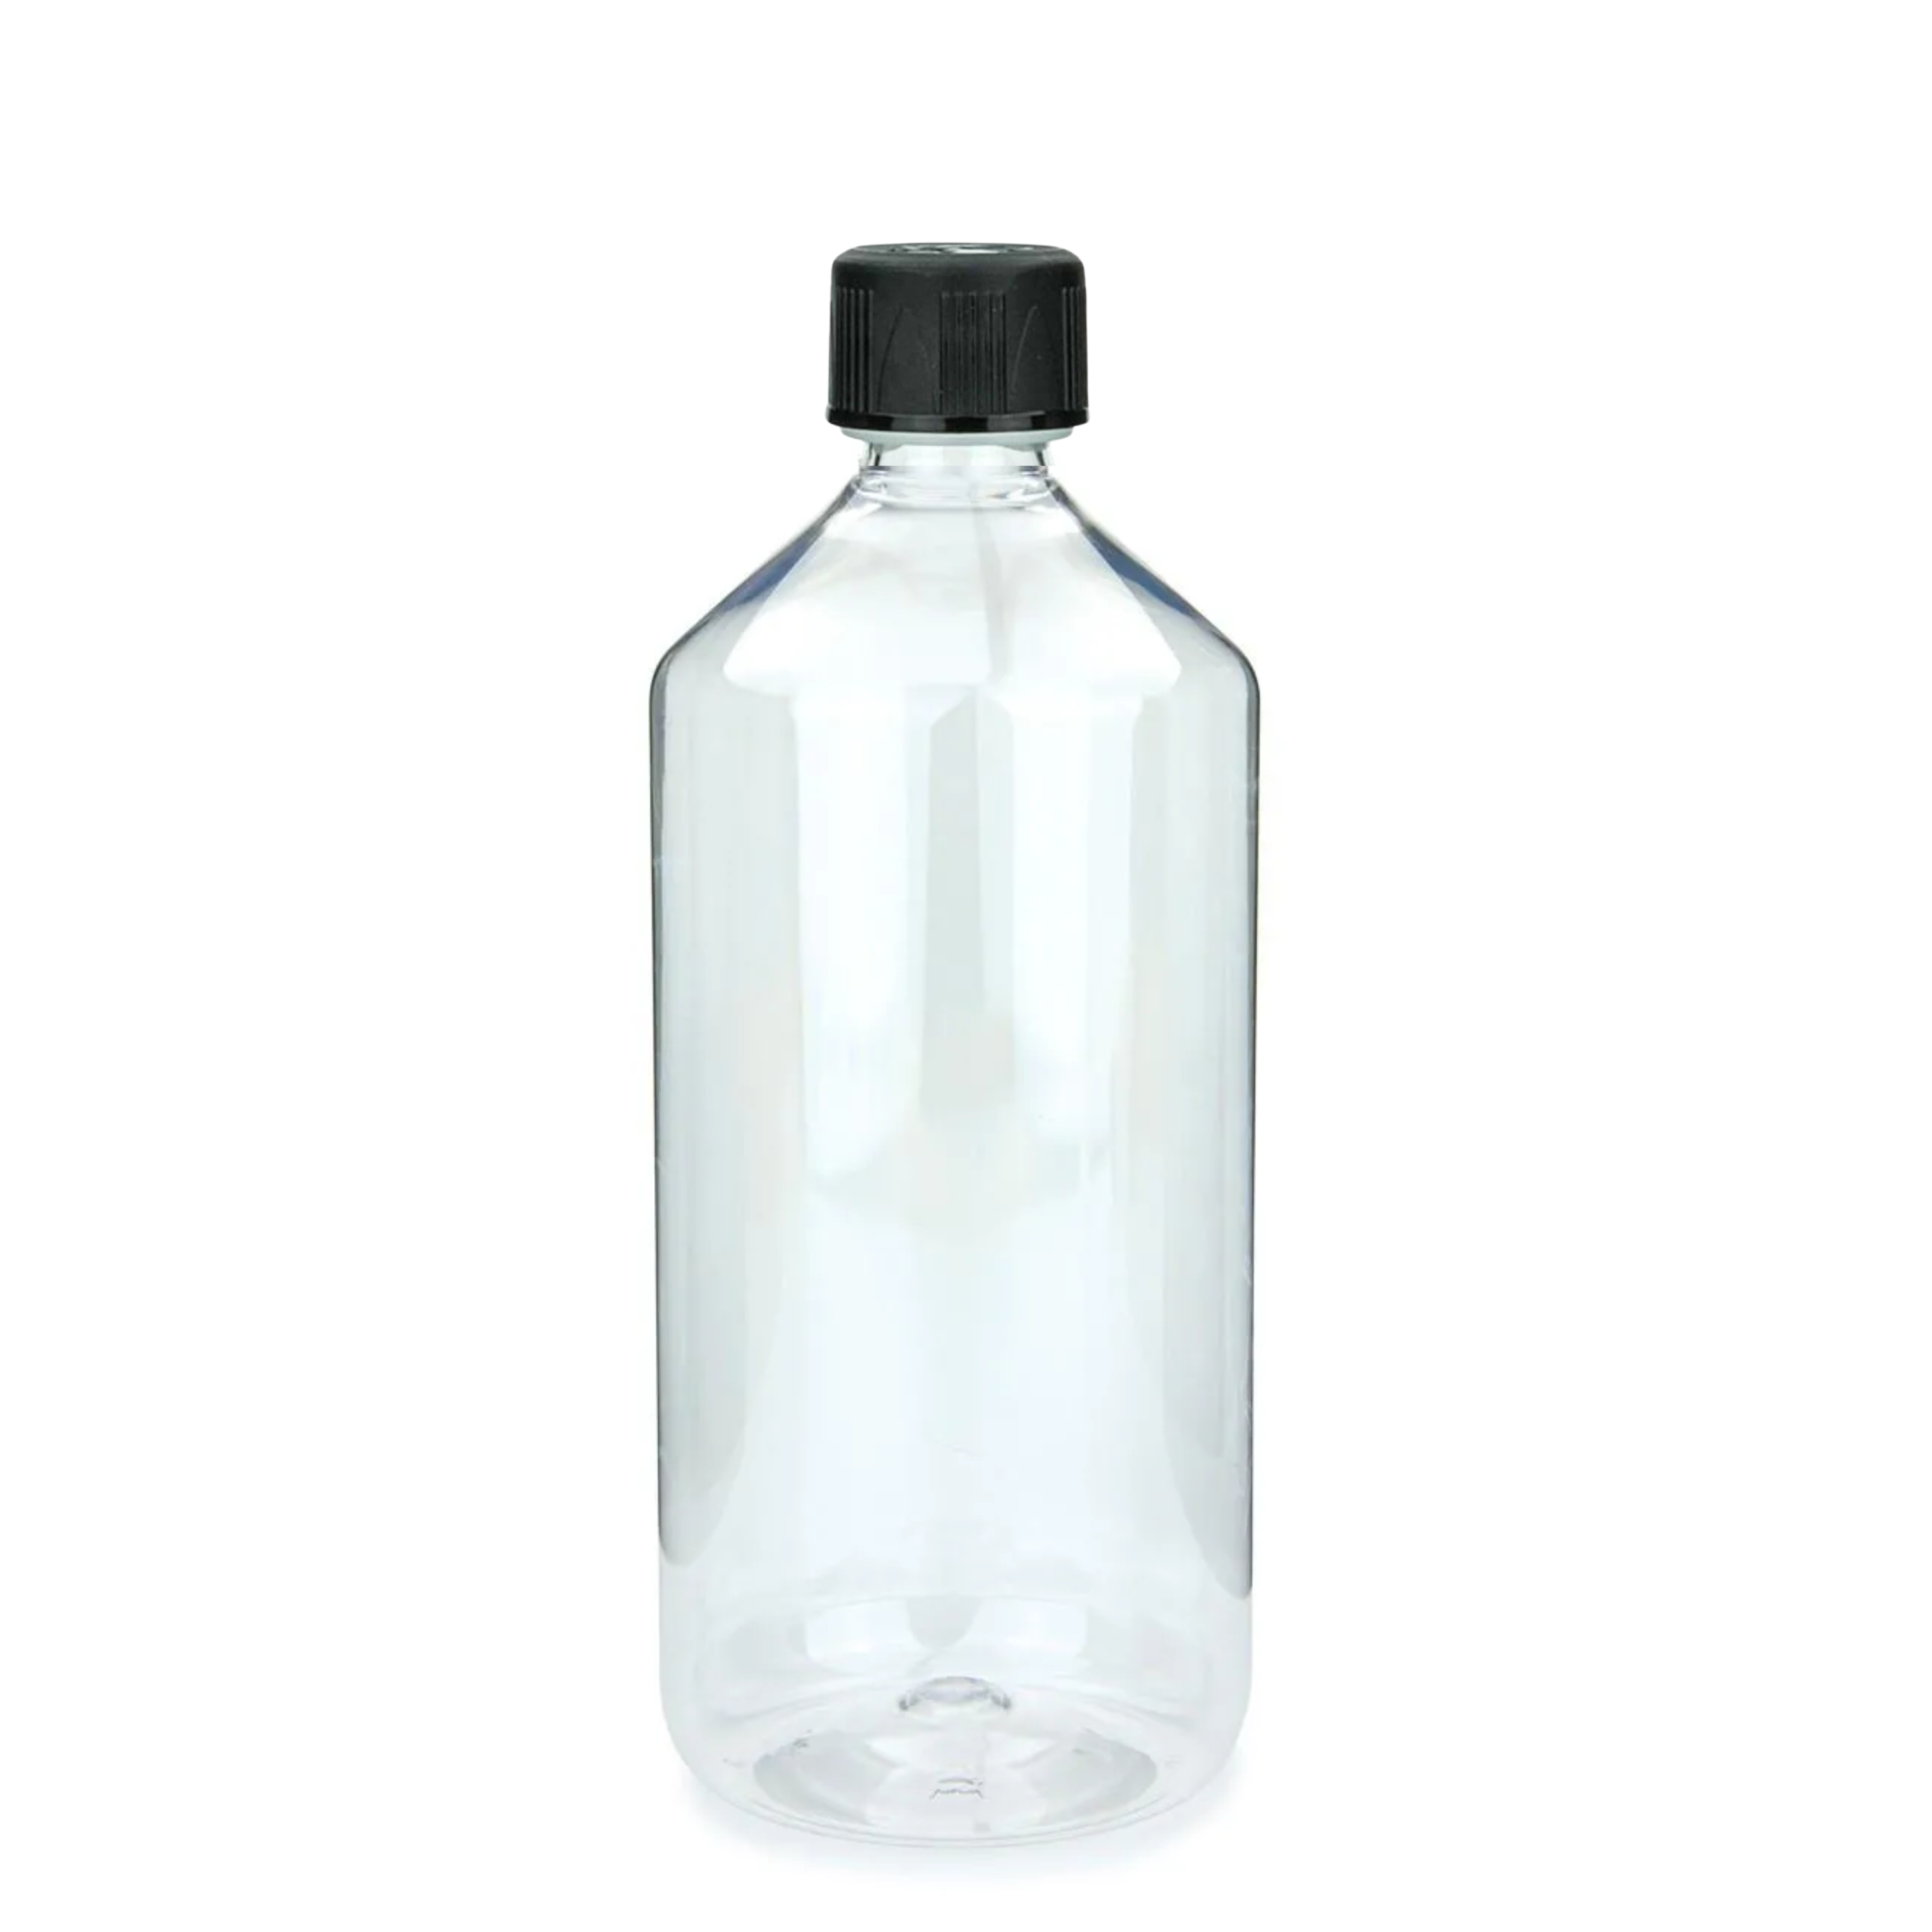 mikken Laborflasche 1000 ml aus PET Kunststoff Chemikalienflasche mit Schraubverschluss 1 Liter